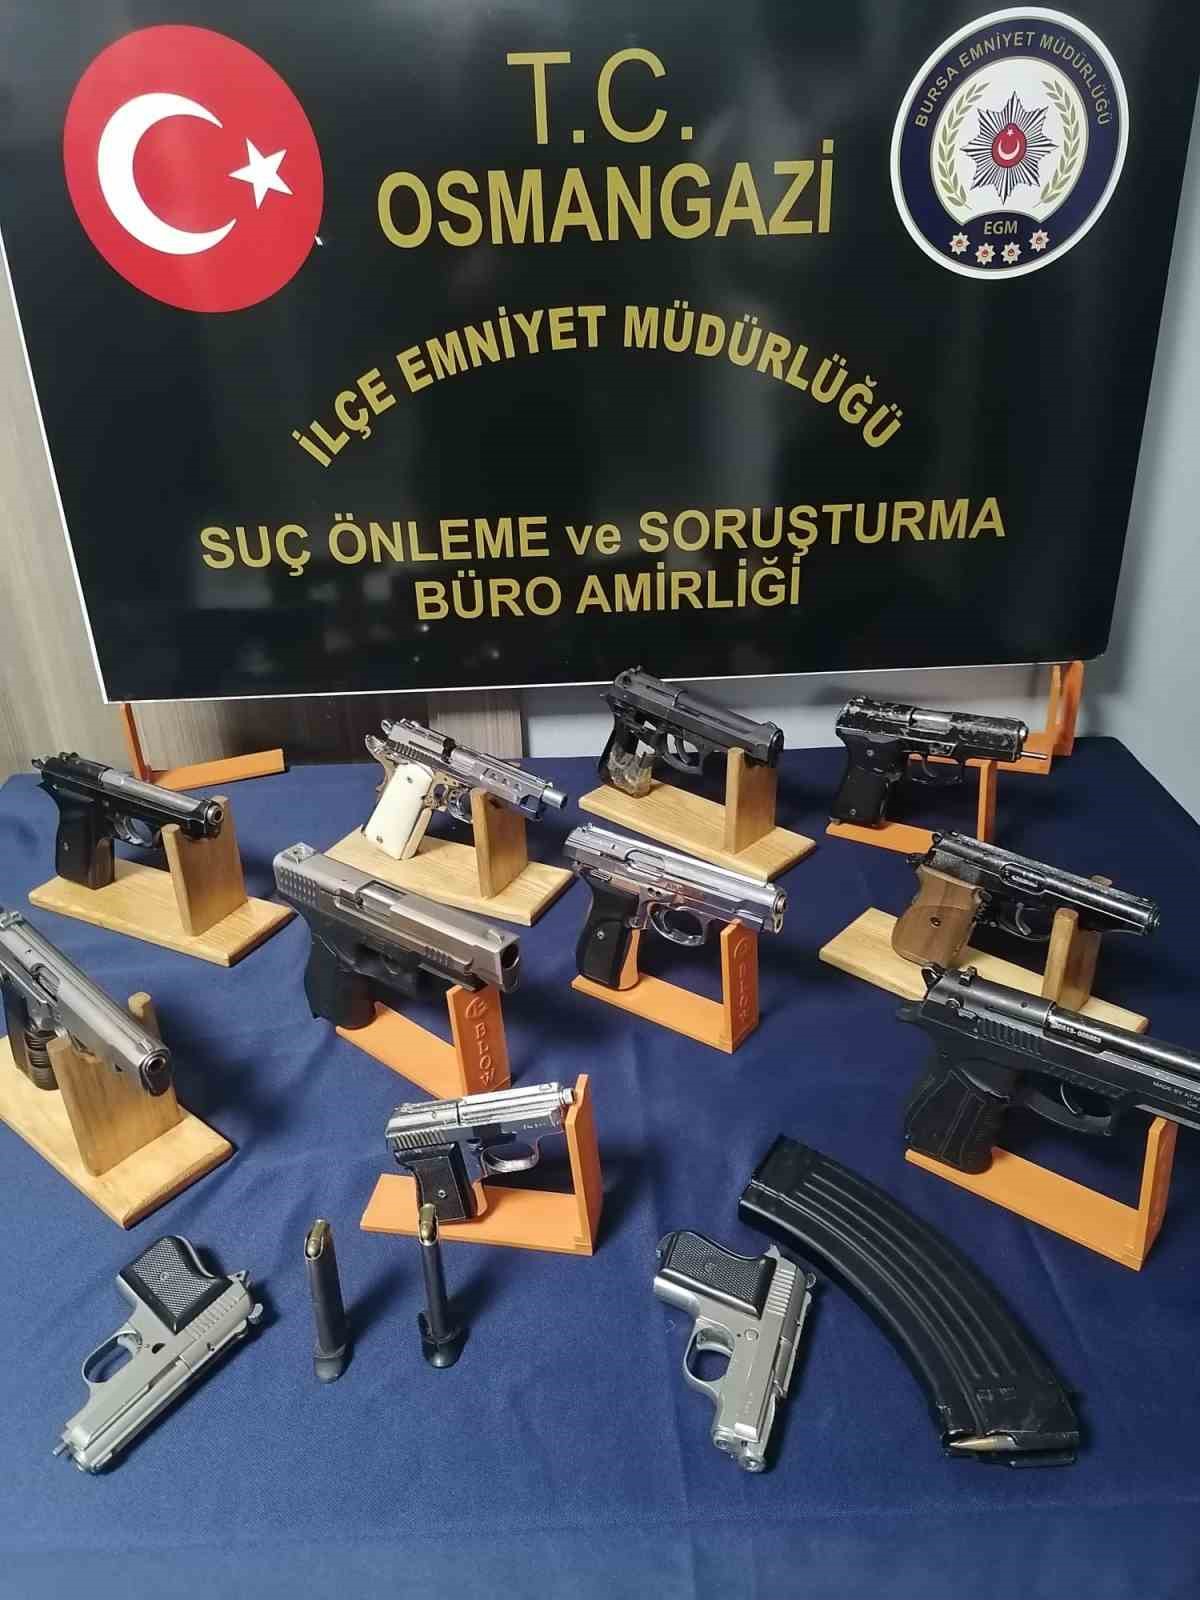 Bursa’da polis ekiplerince baskın atılan ev silah atölyesi çıktı